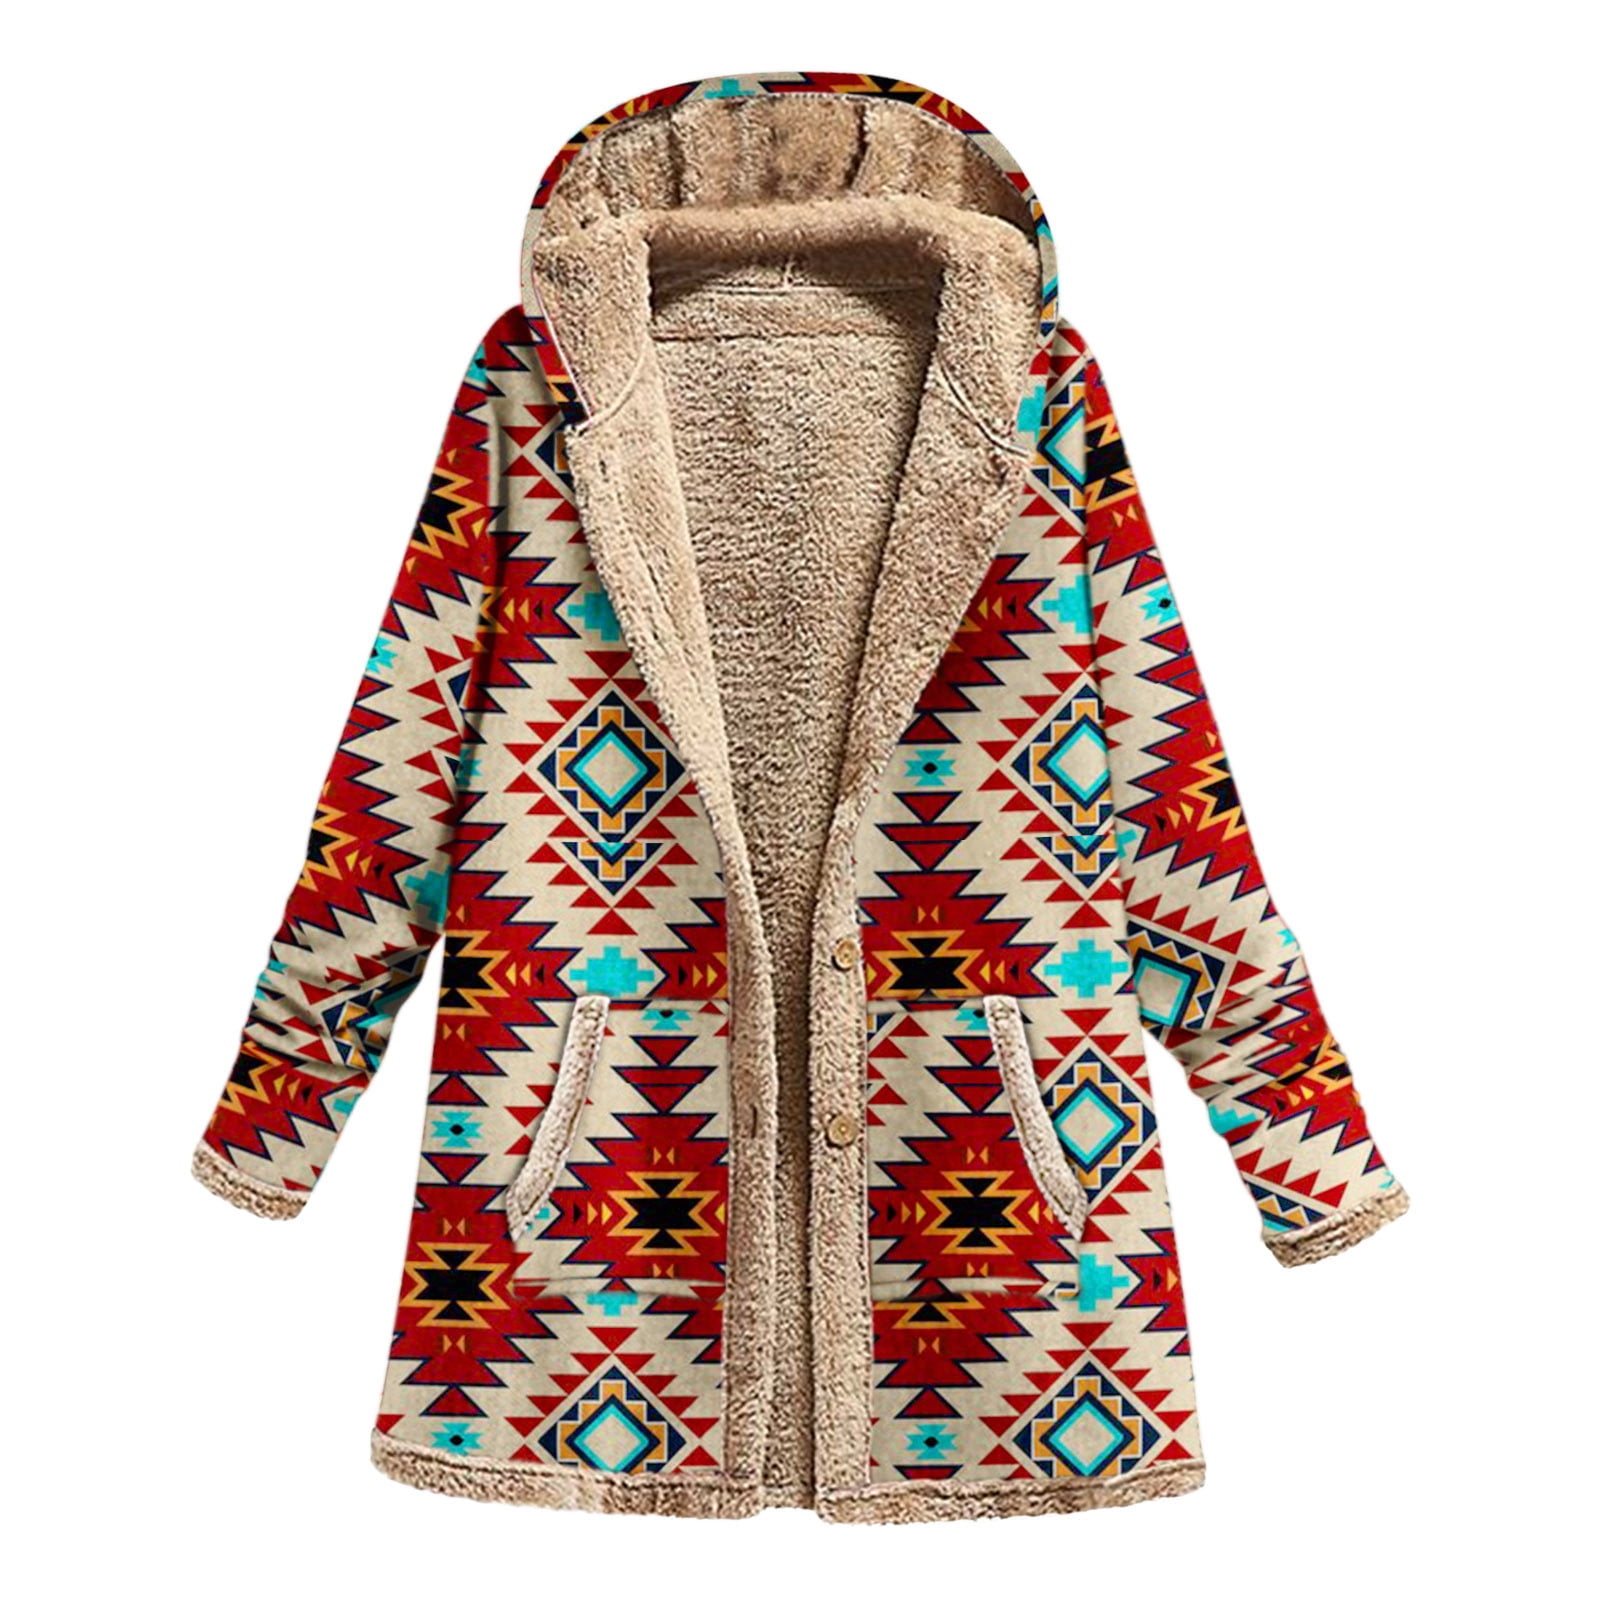 Sherpa Lined Jacket Women Vintage Western Print Fleece Jacket Thick Long Sleeve Warm Winter Coats Outwear Hoodie 